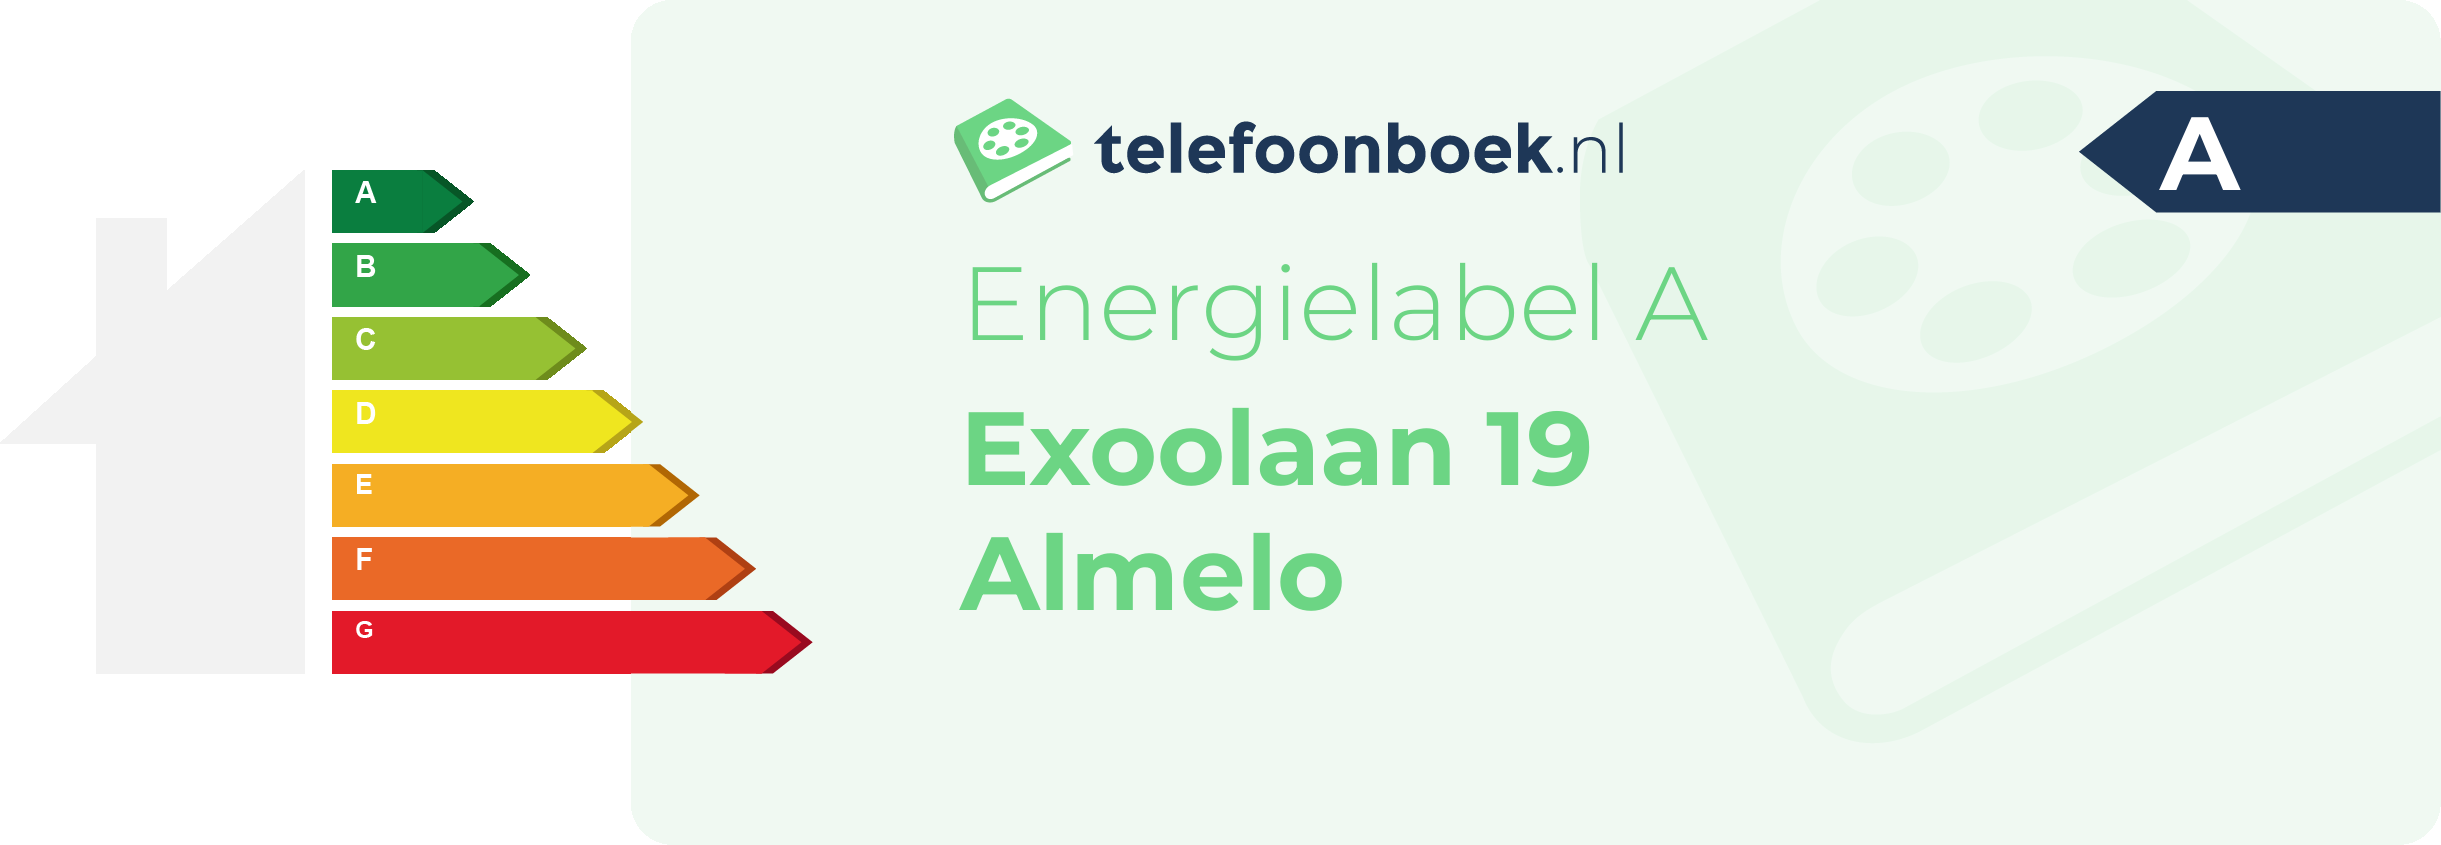 Energielabel Exoolaan 19 Almelo